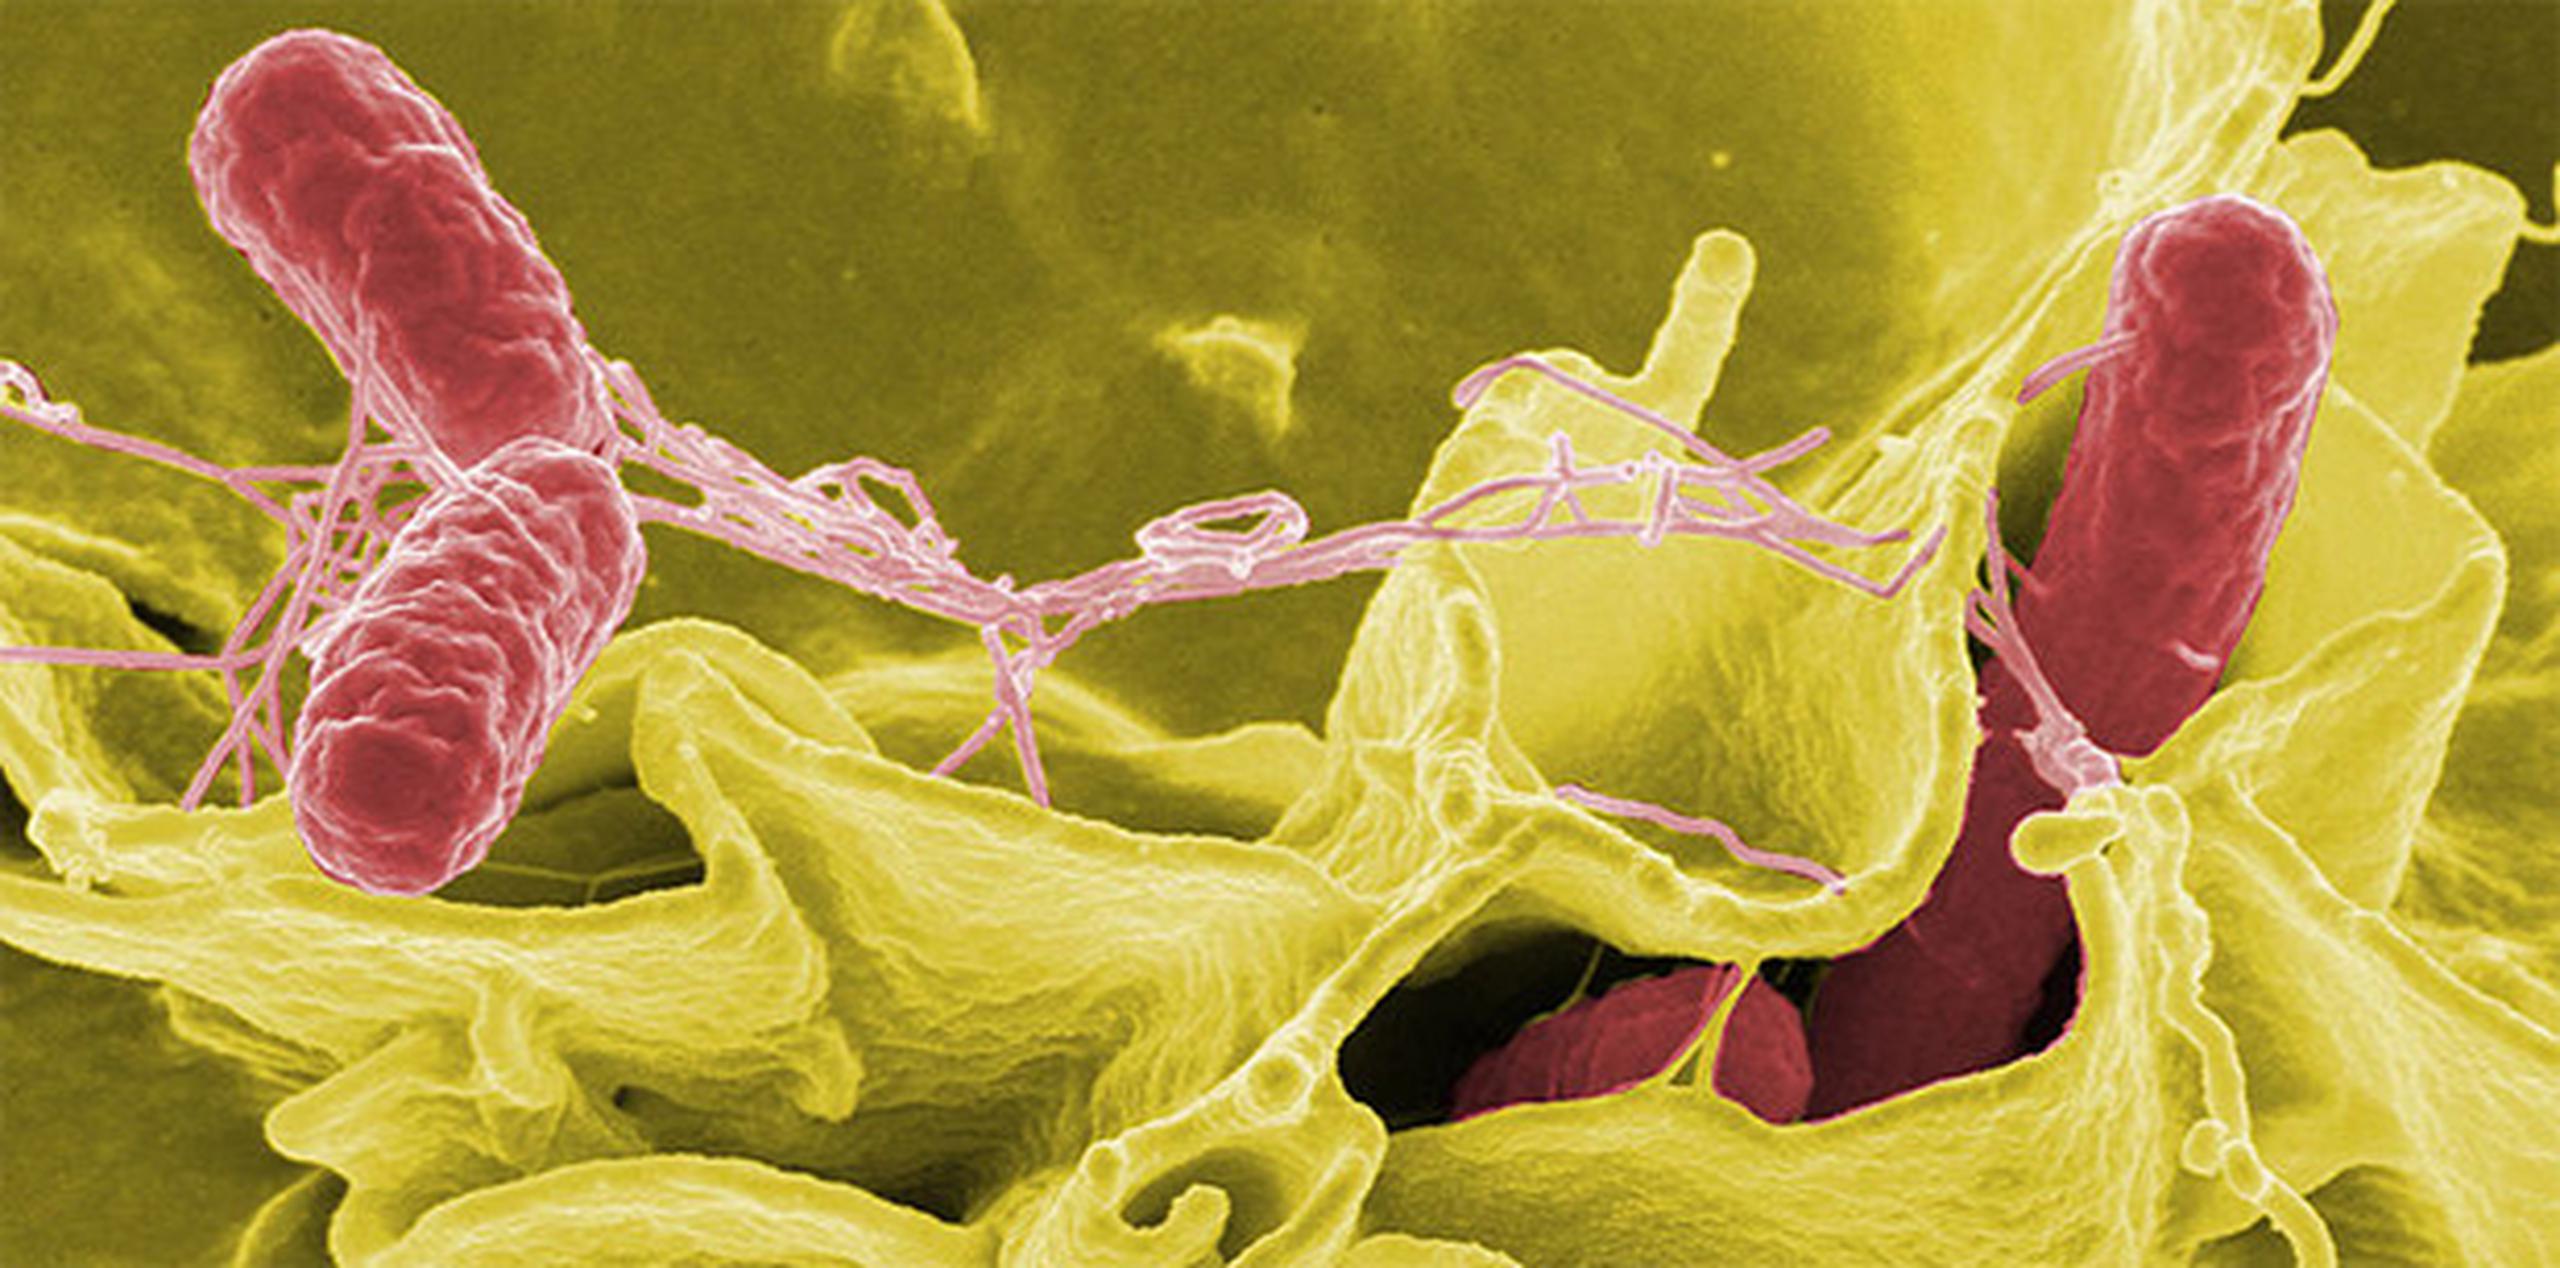 Imagen microscópica de la salmonella. (Fotos/Wikipedia)